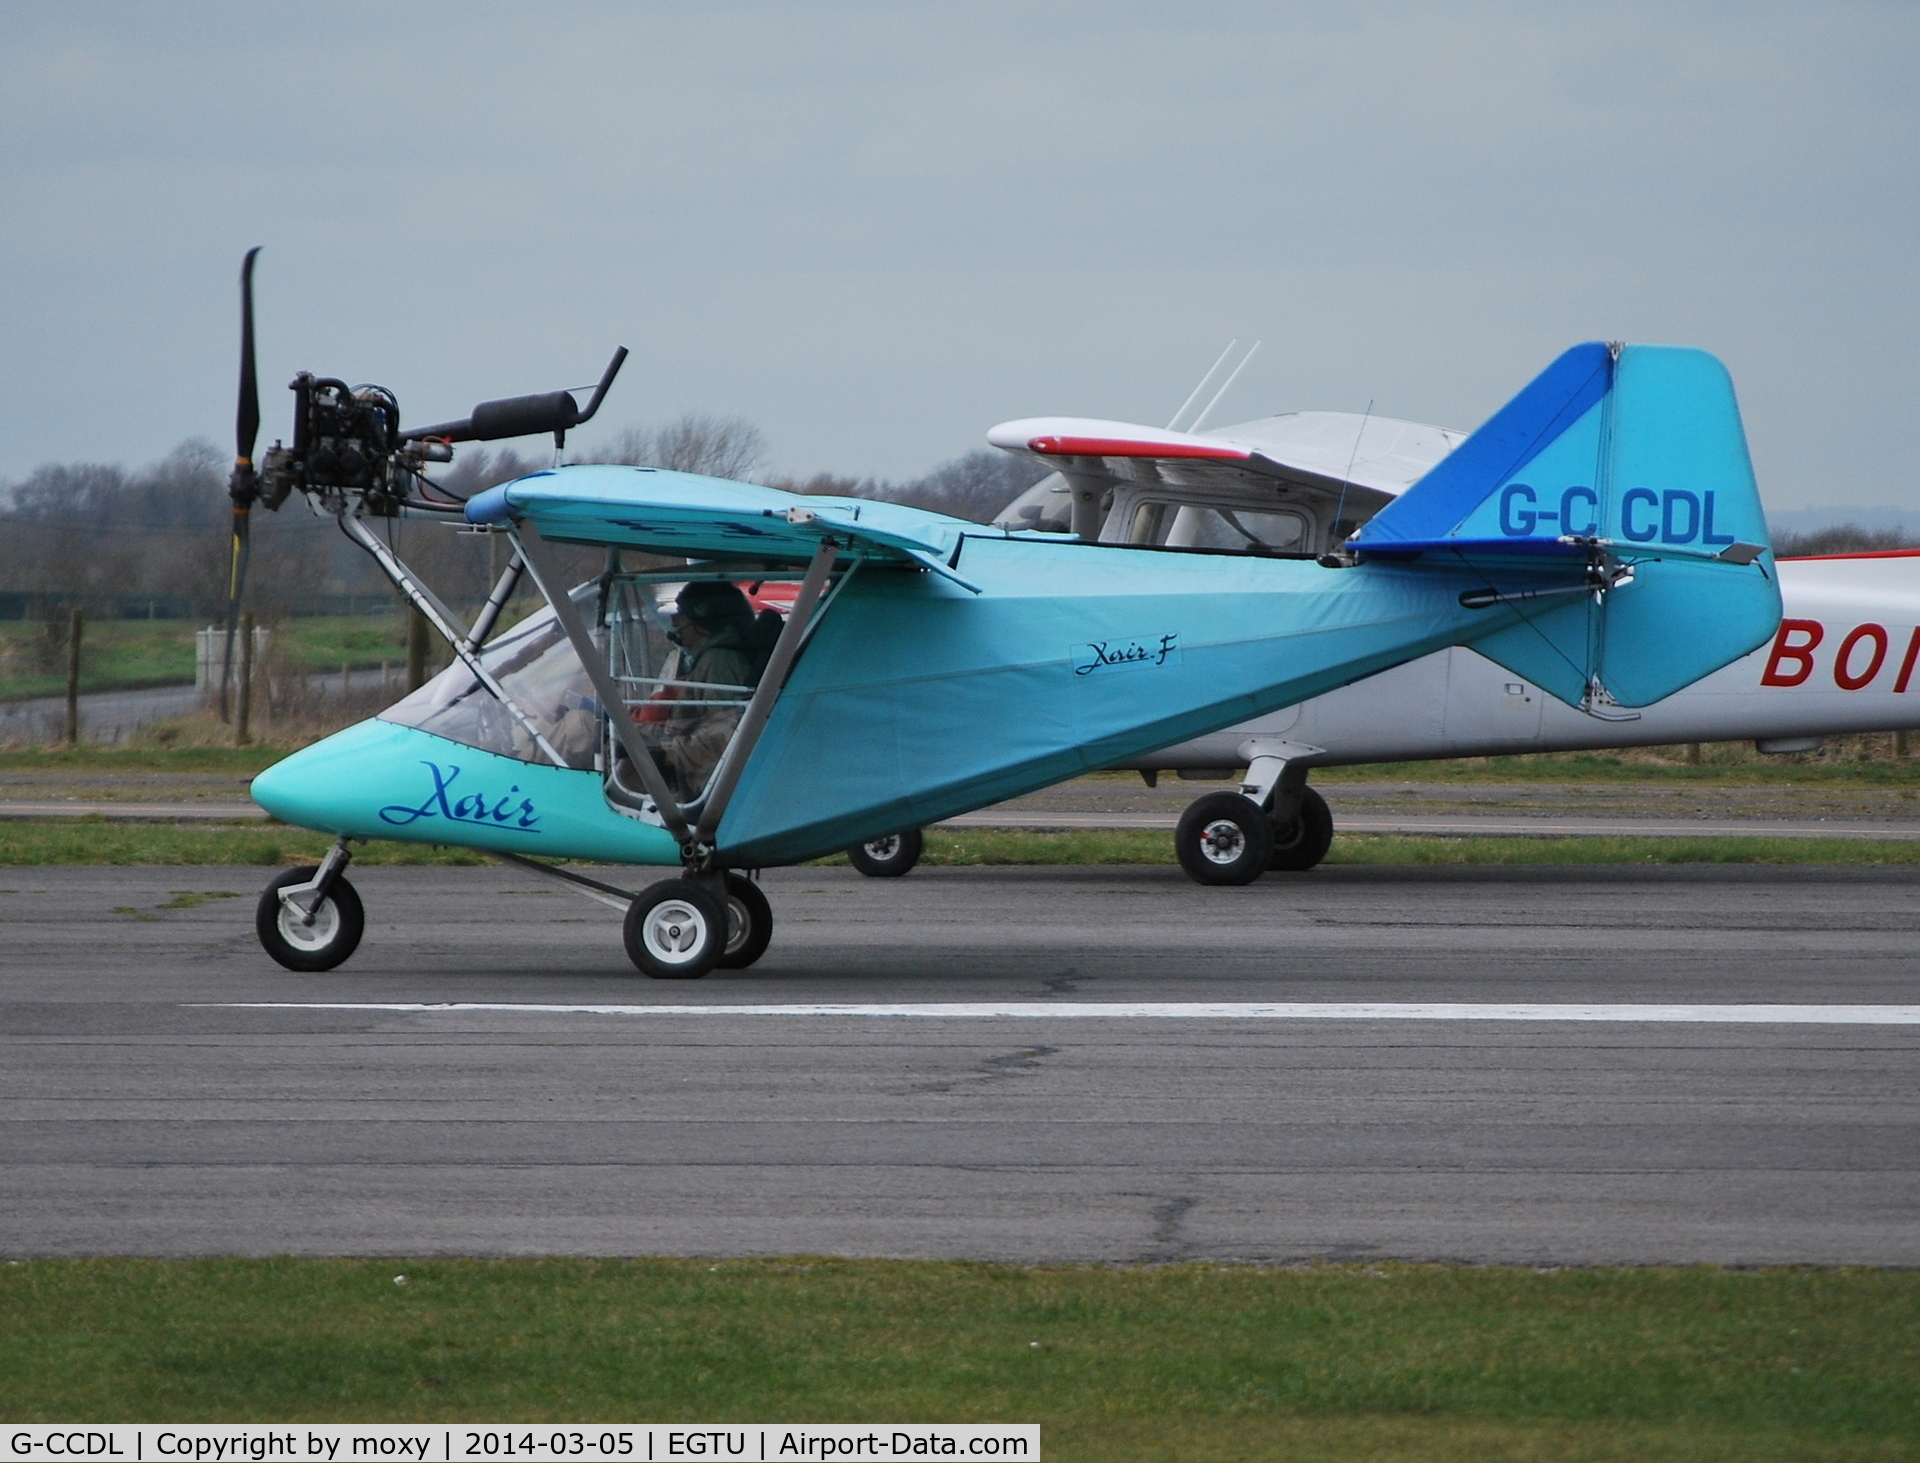 G-CCDL, 2003 X'Air Falcon 582(2) C/N BMAA/HB/274, Burroughs H X'Air Falcon 582 (2) at Dunkeswell.